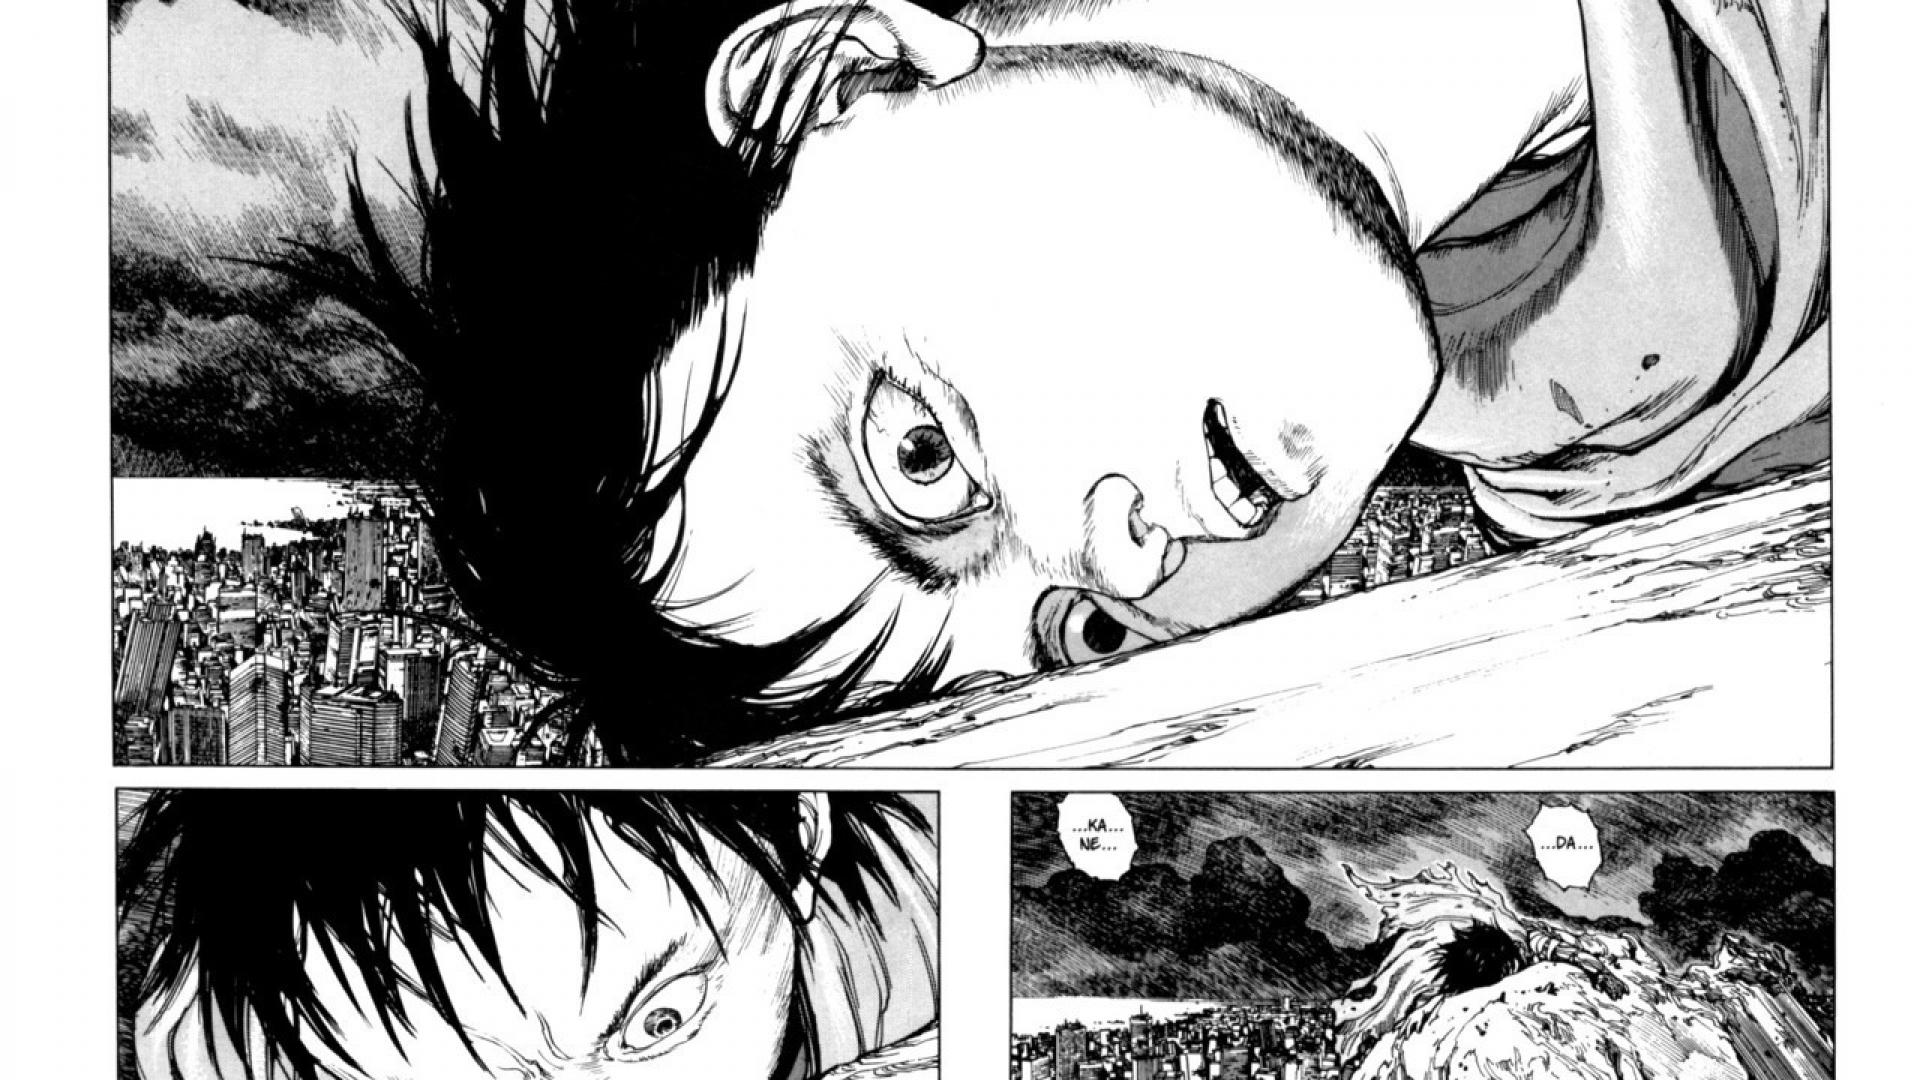 manga hd wallpaper,karikatur,schwarz und weiß,anime,einfarbig,illustration